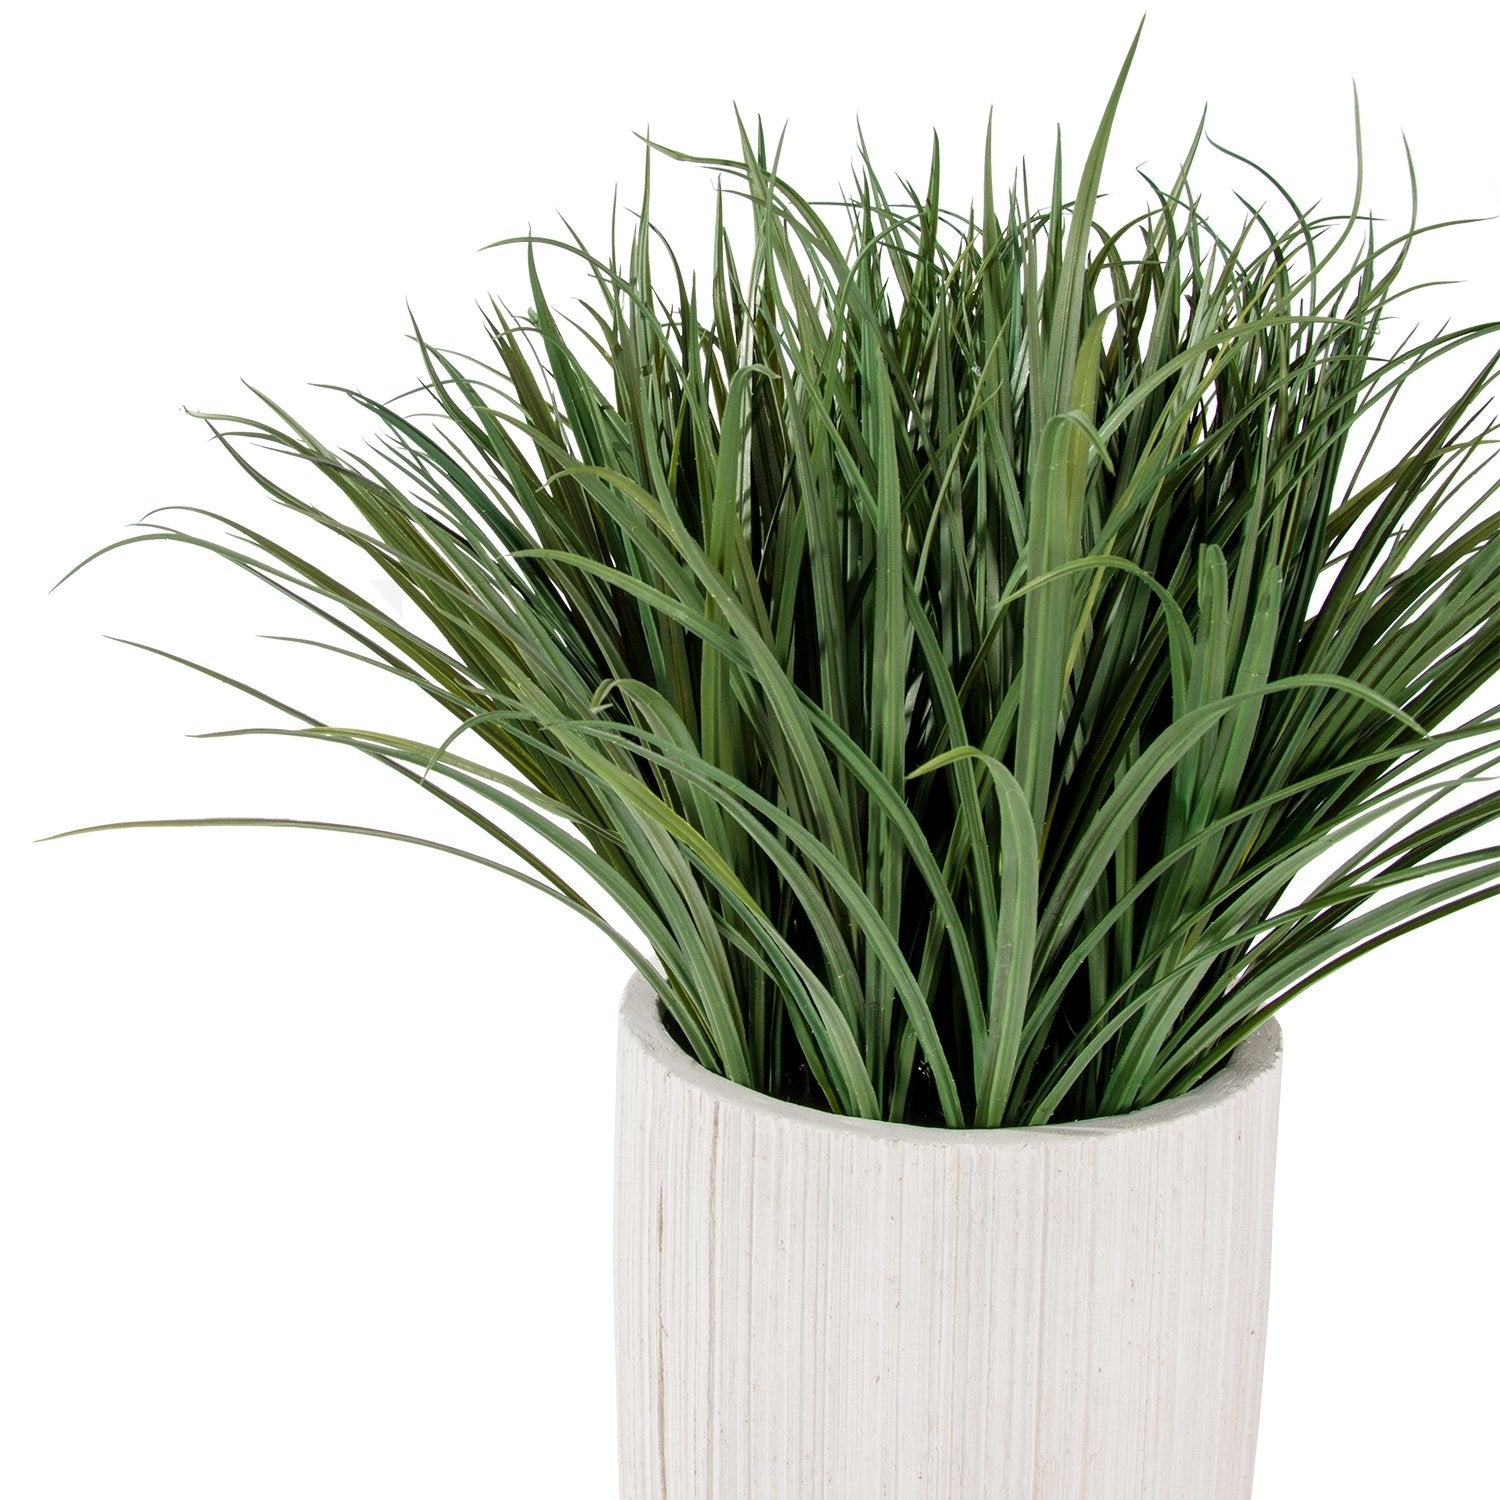 Grass: Liriope in Linea Planter